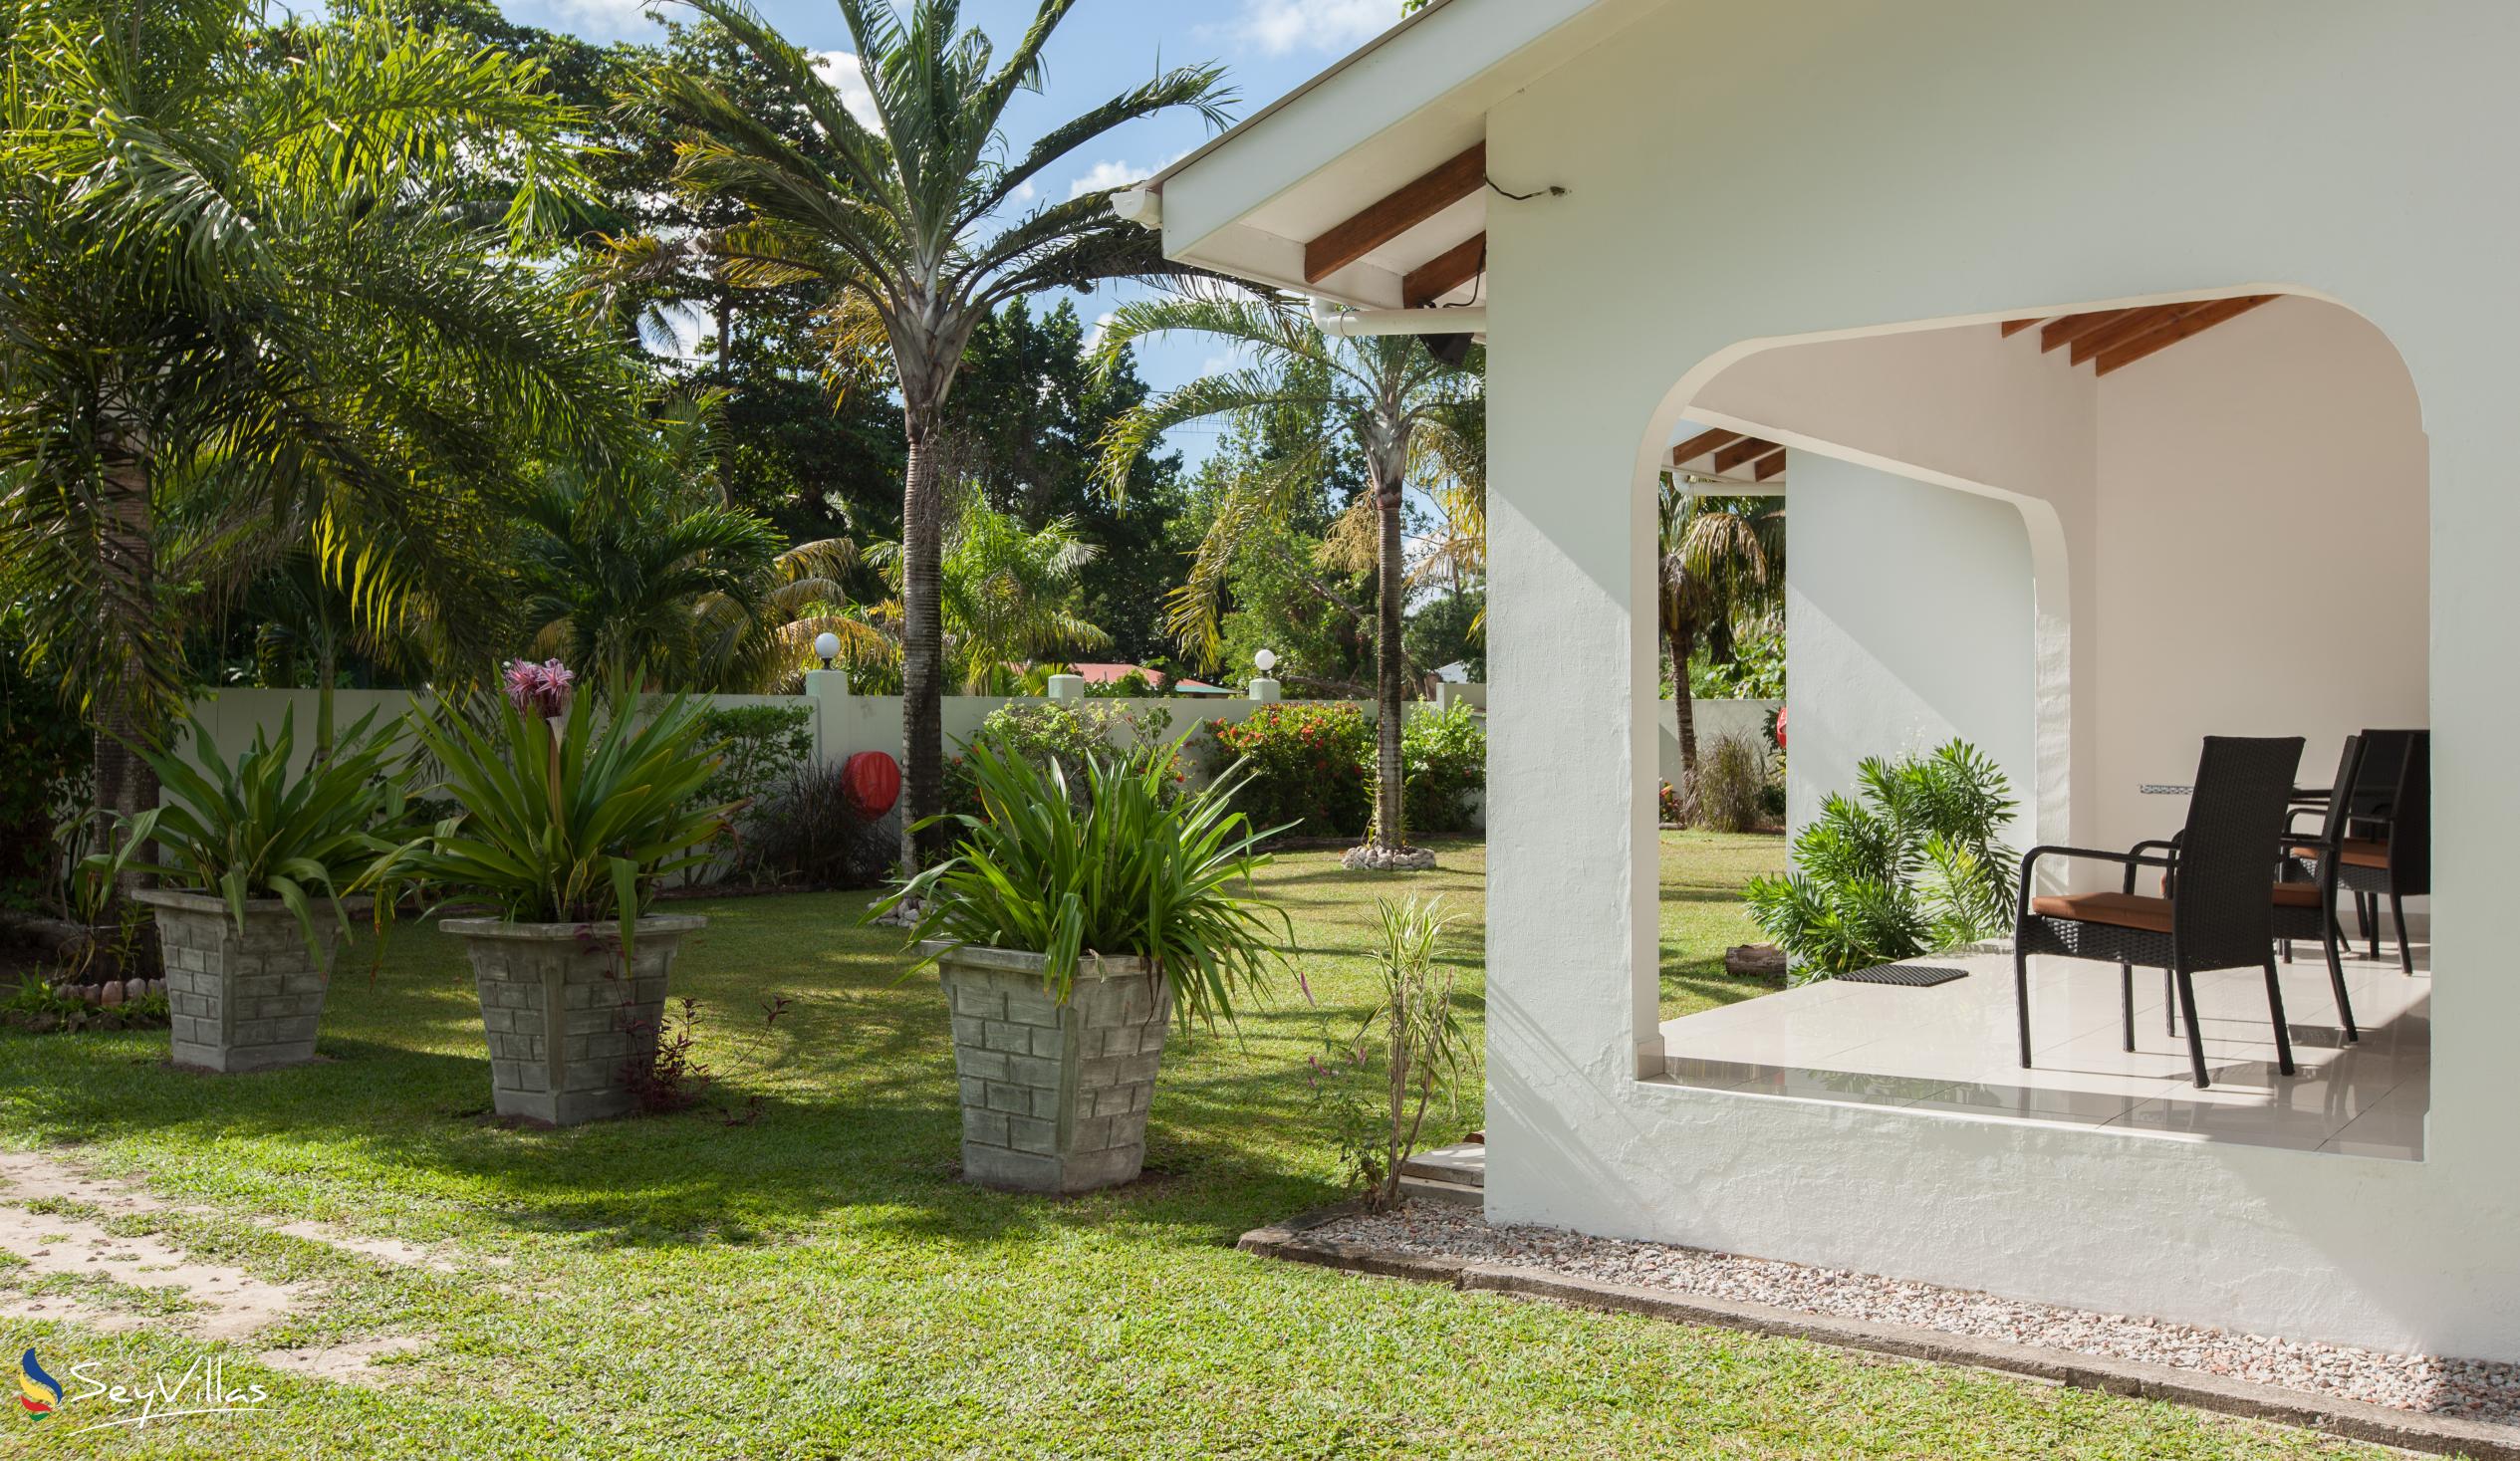 Foto 18: La Modestie Villa - Aussenbereich - Praslin (Seychellen)